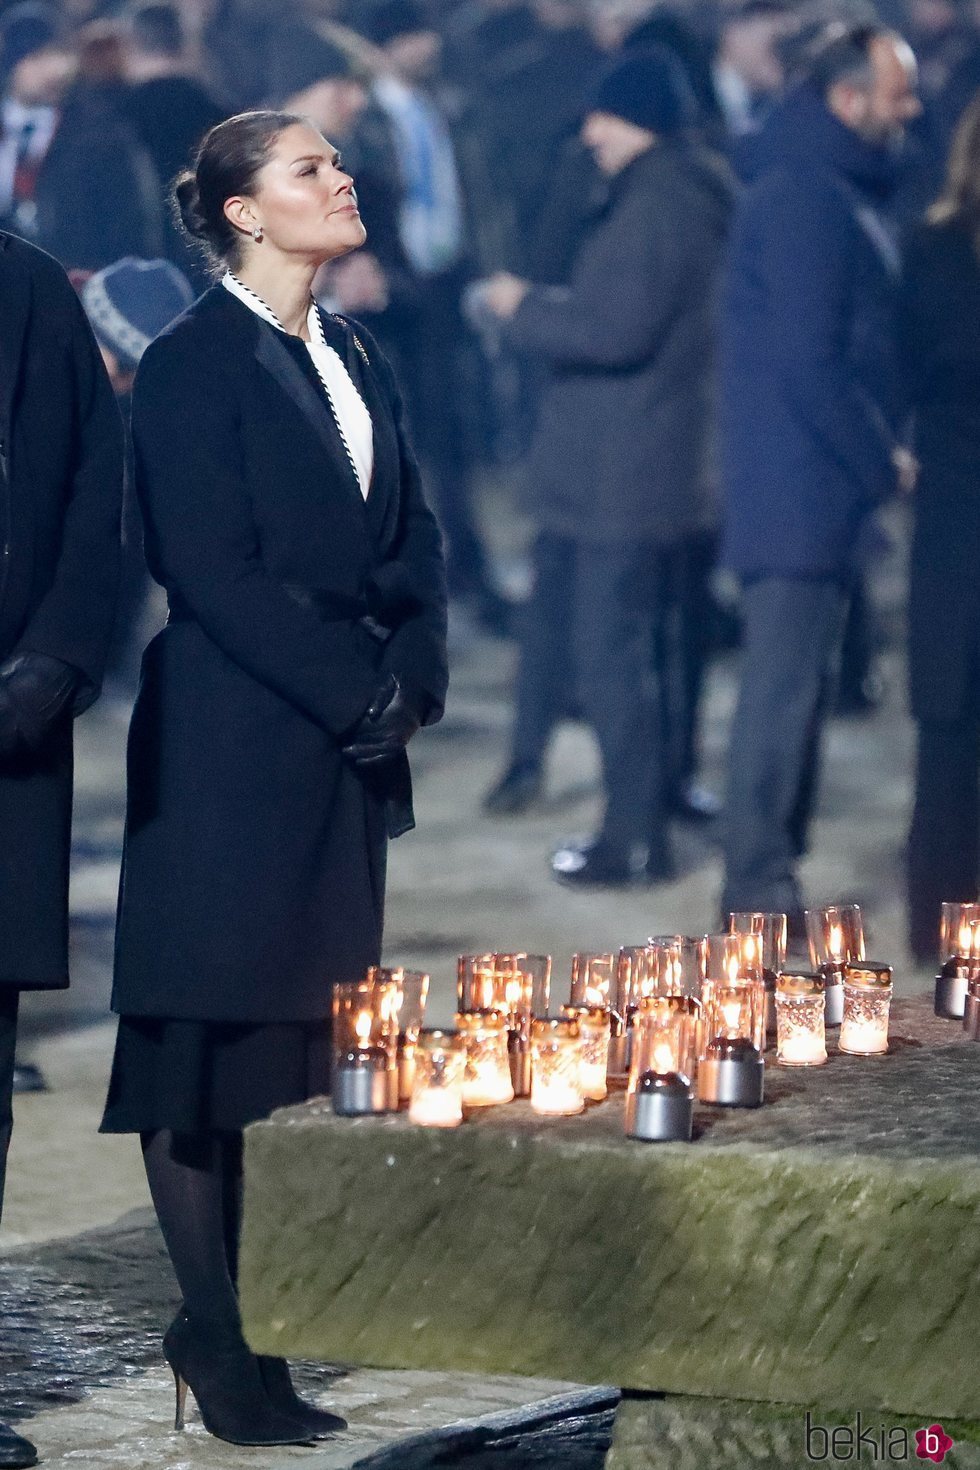 Victoria de Suecia en el 75 aniversario de la liberación de Auschwitz-Birkenau